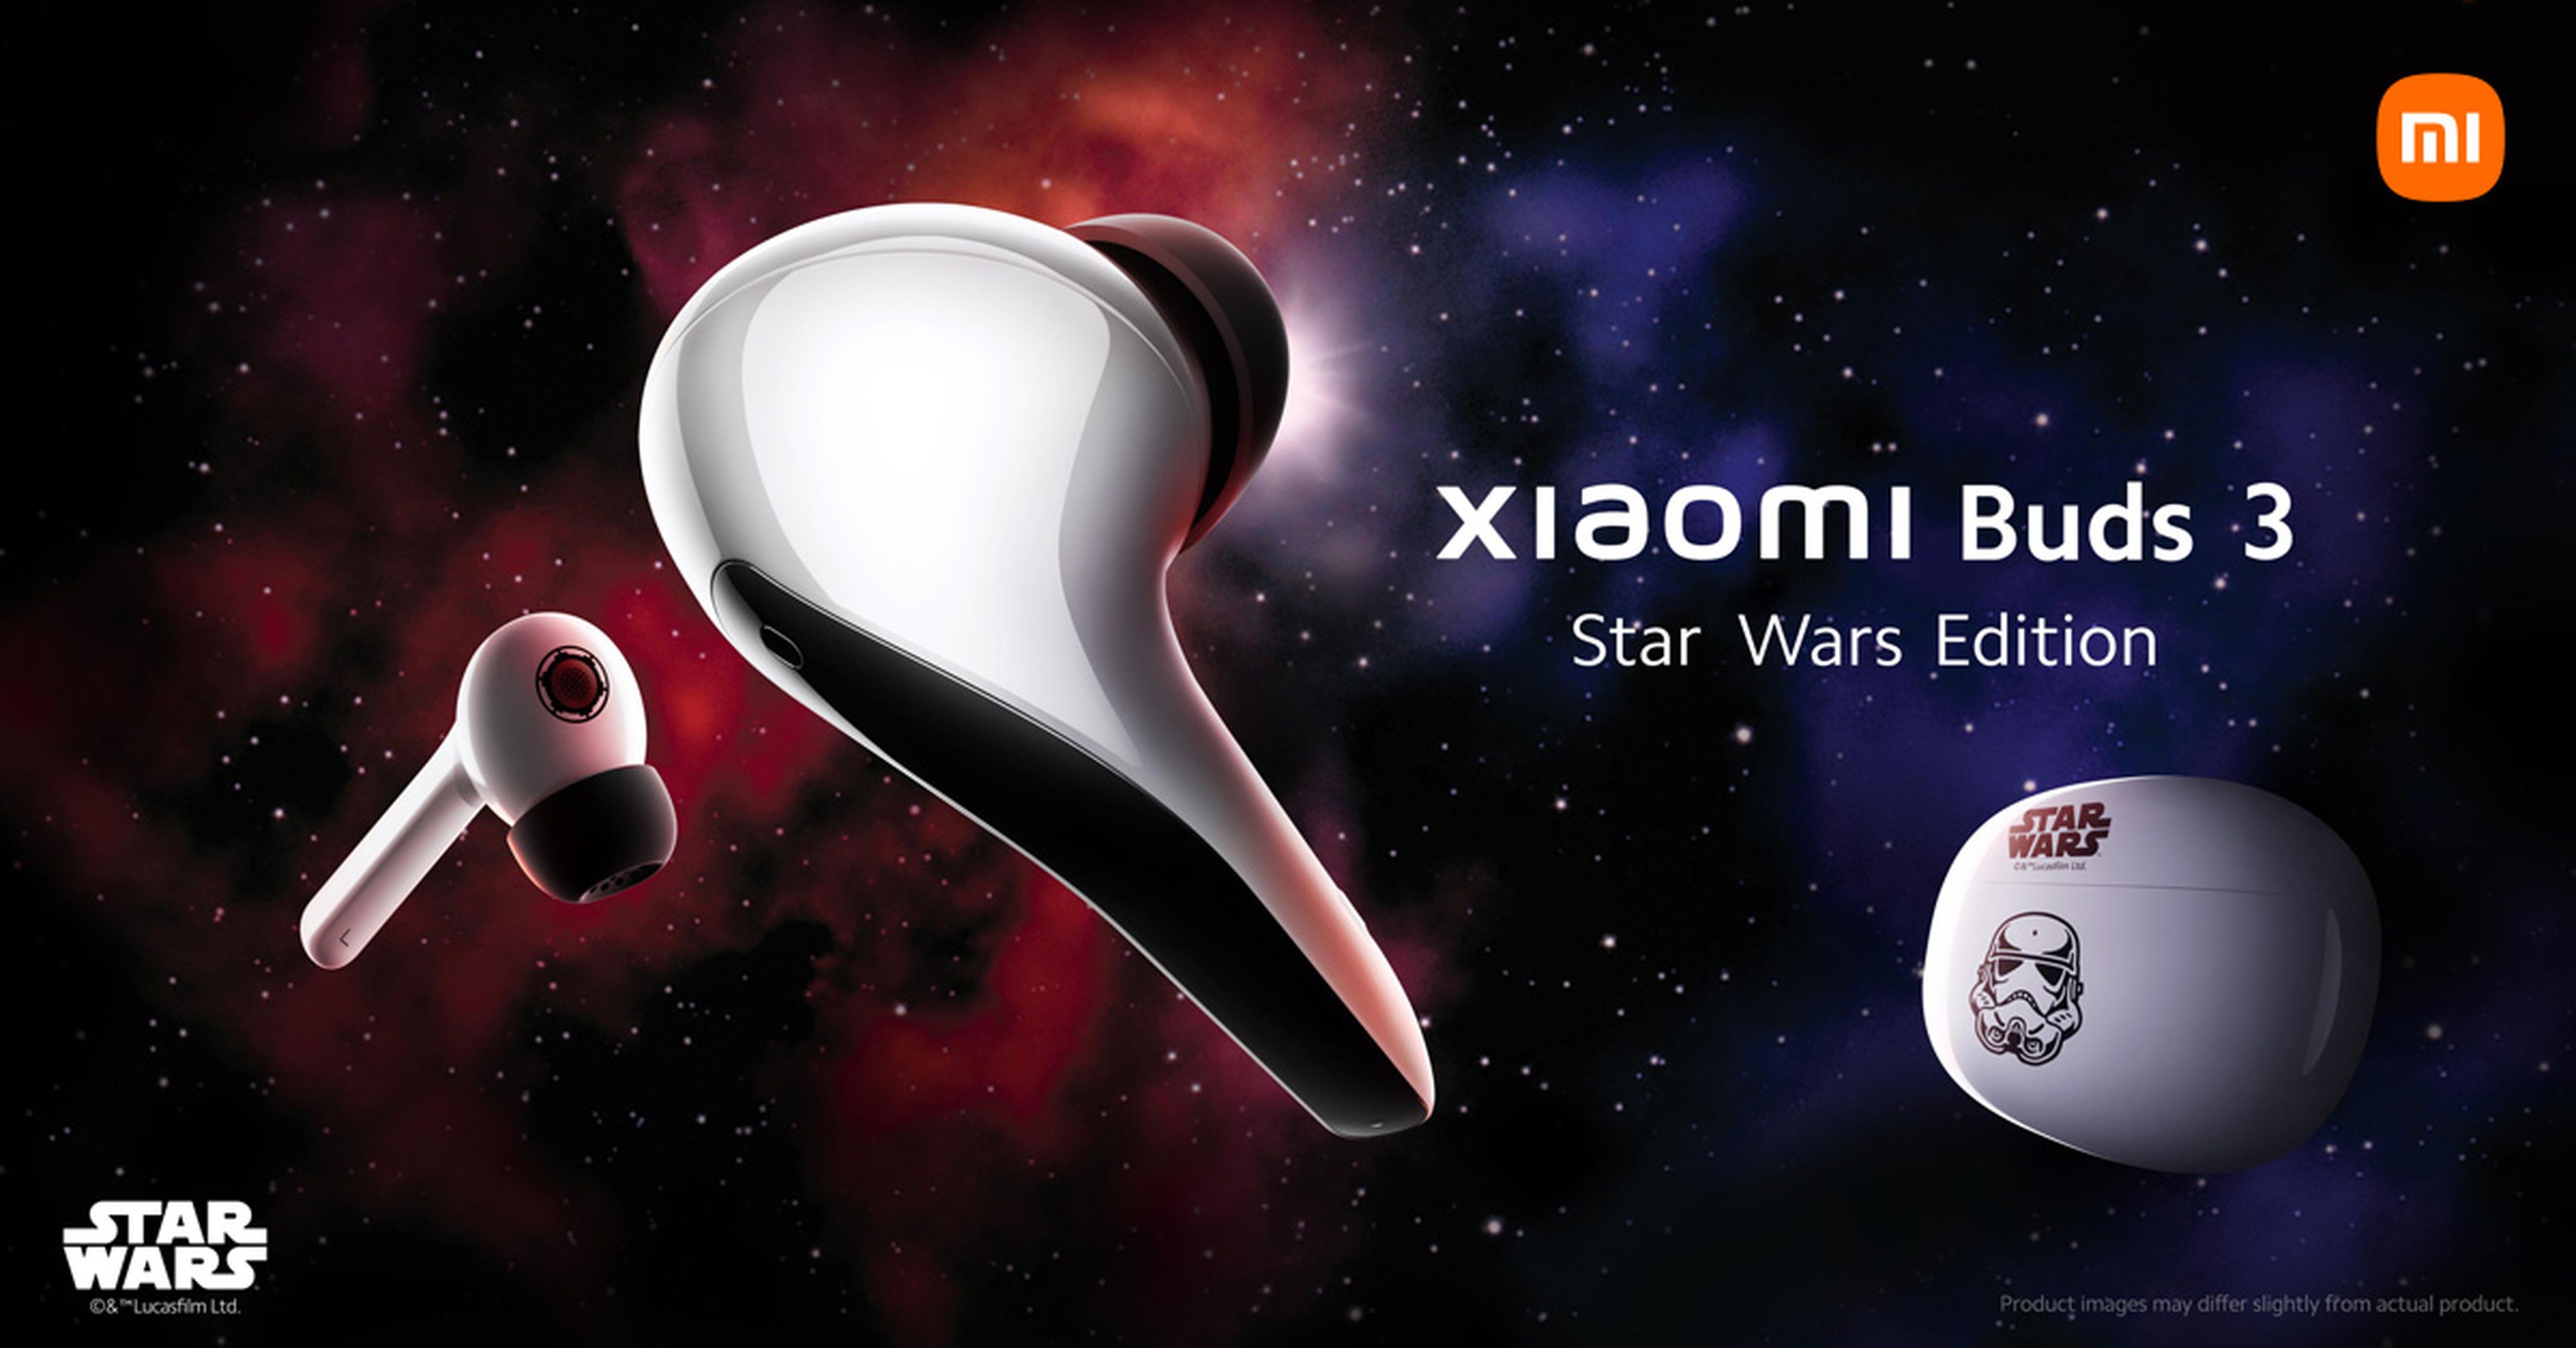 Celebra el día de Star Wars con los nuevos Xiaomi Buds 3 Star Wars Edition